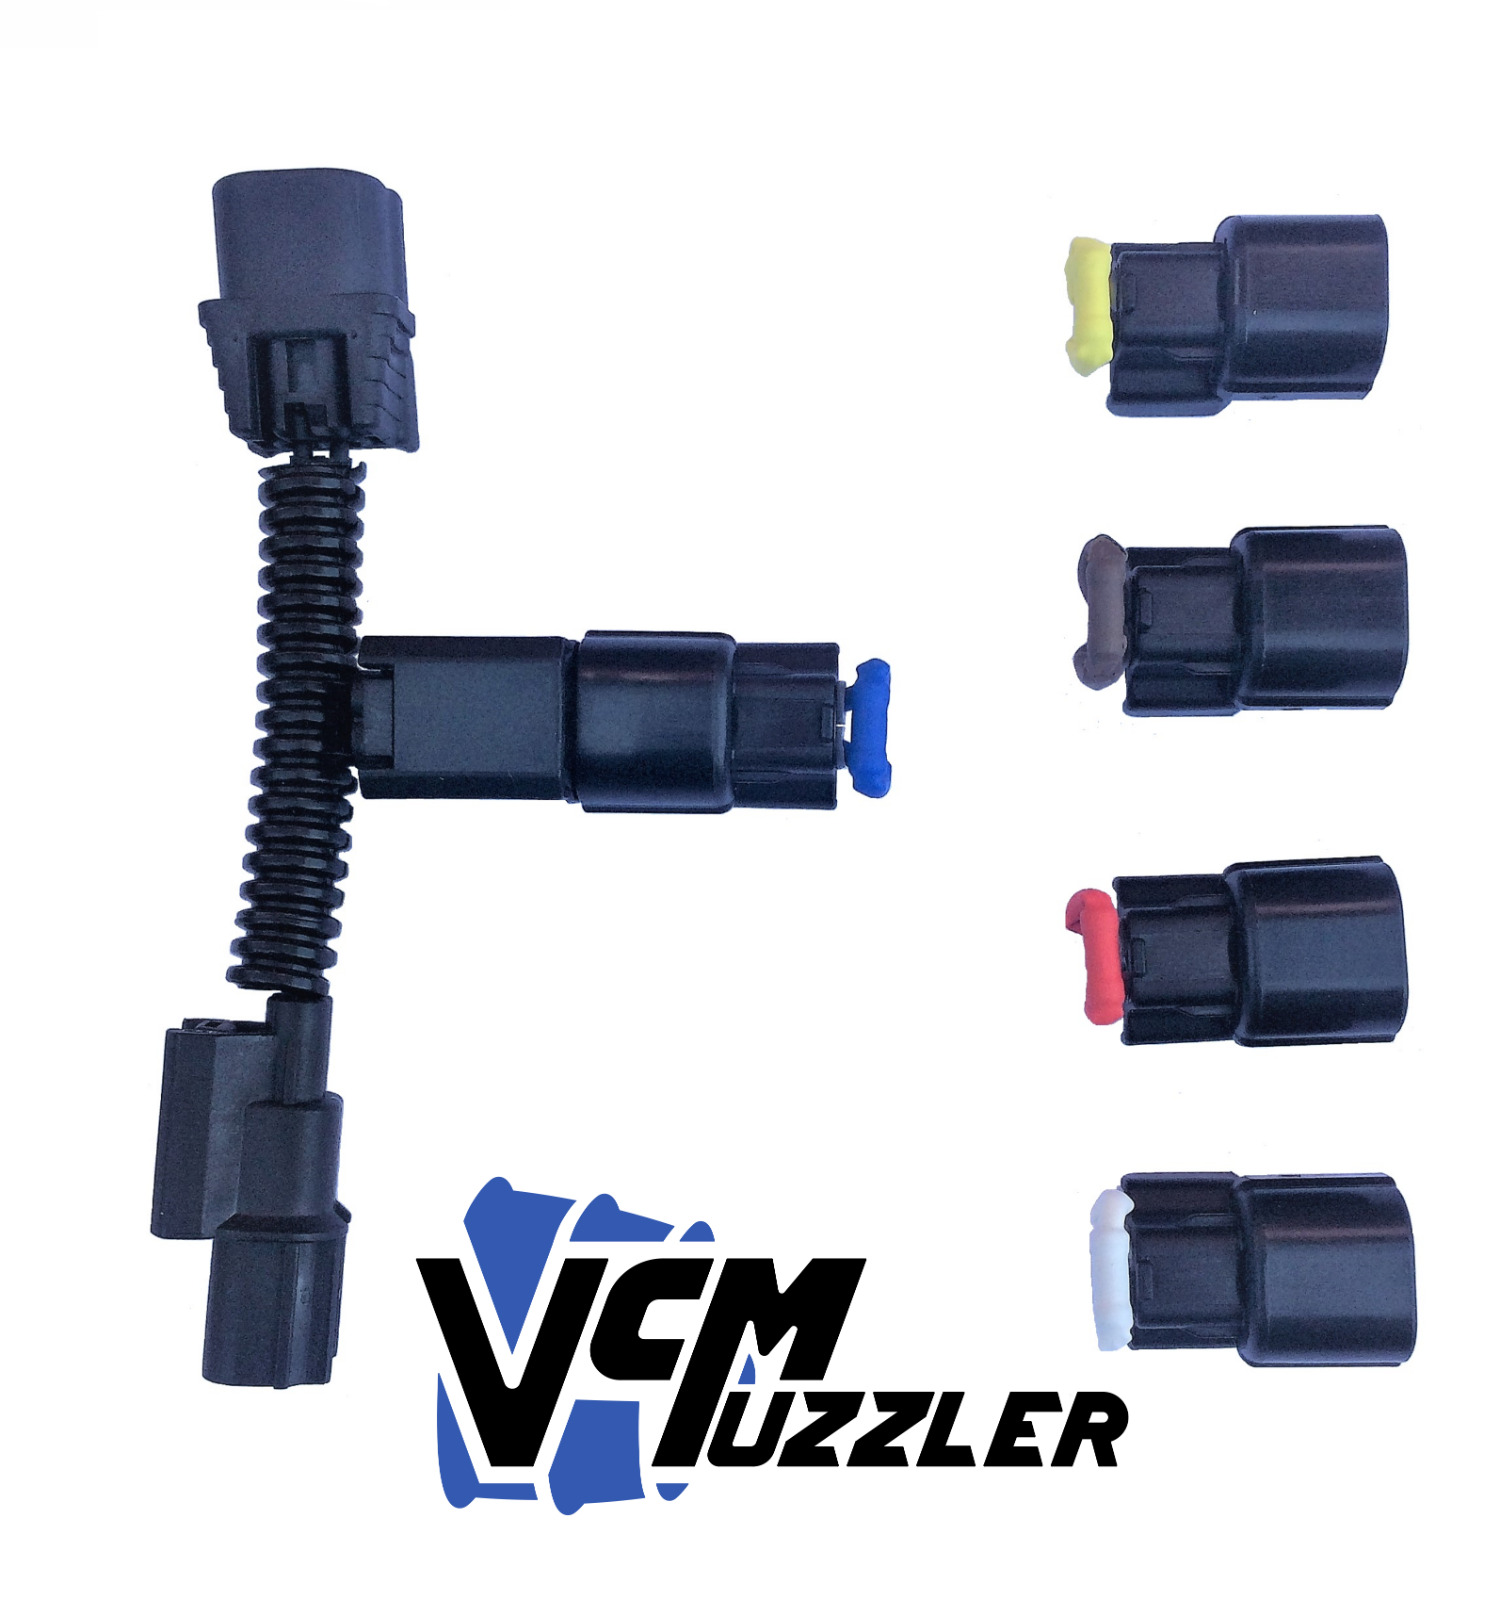 VCMuzzler II to Disable / muzzle VCM on Honda Acura vehicles  VCM Muzzler delete